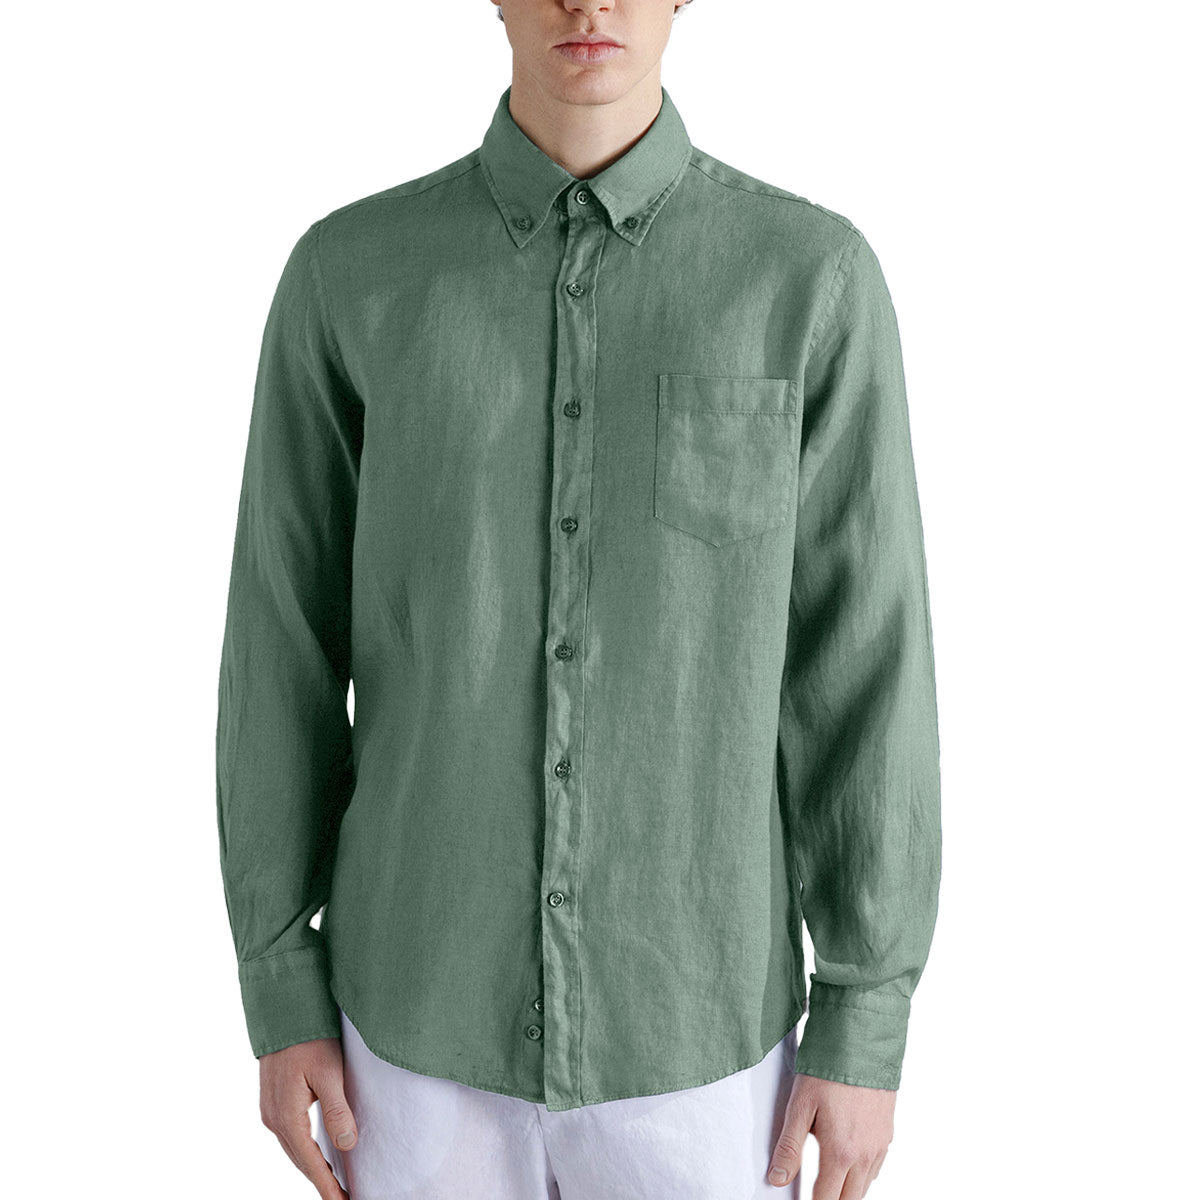 Olive Green Linen Long Sleeve Shirt L/S SHIRTS Paul & Shark   